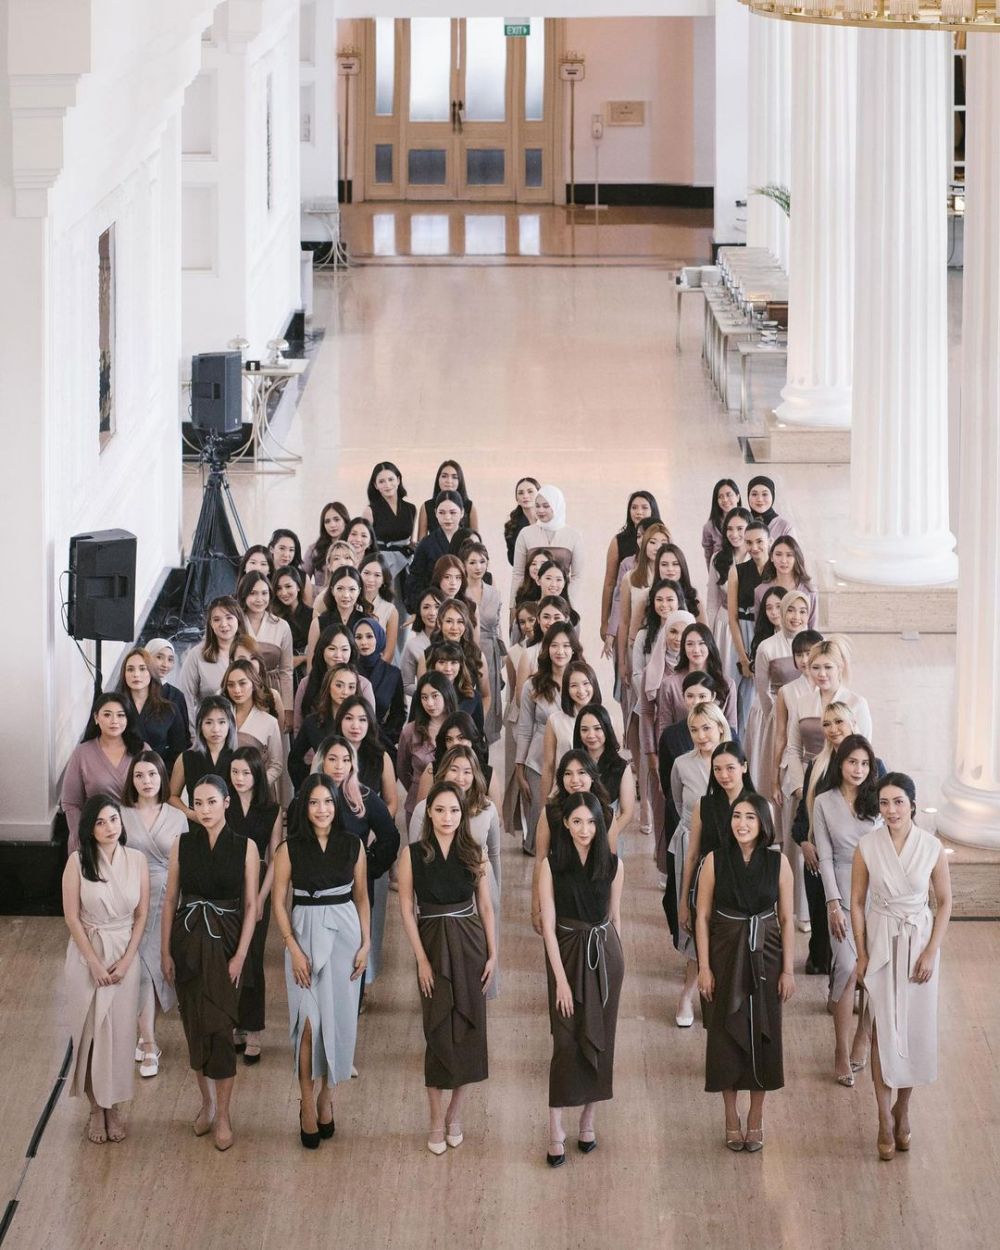 Atvezzo X TikTok Indonesia gelar Virtual Fashion Show Dengan 77 Muses